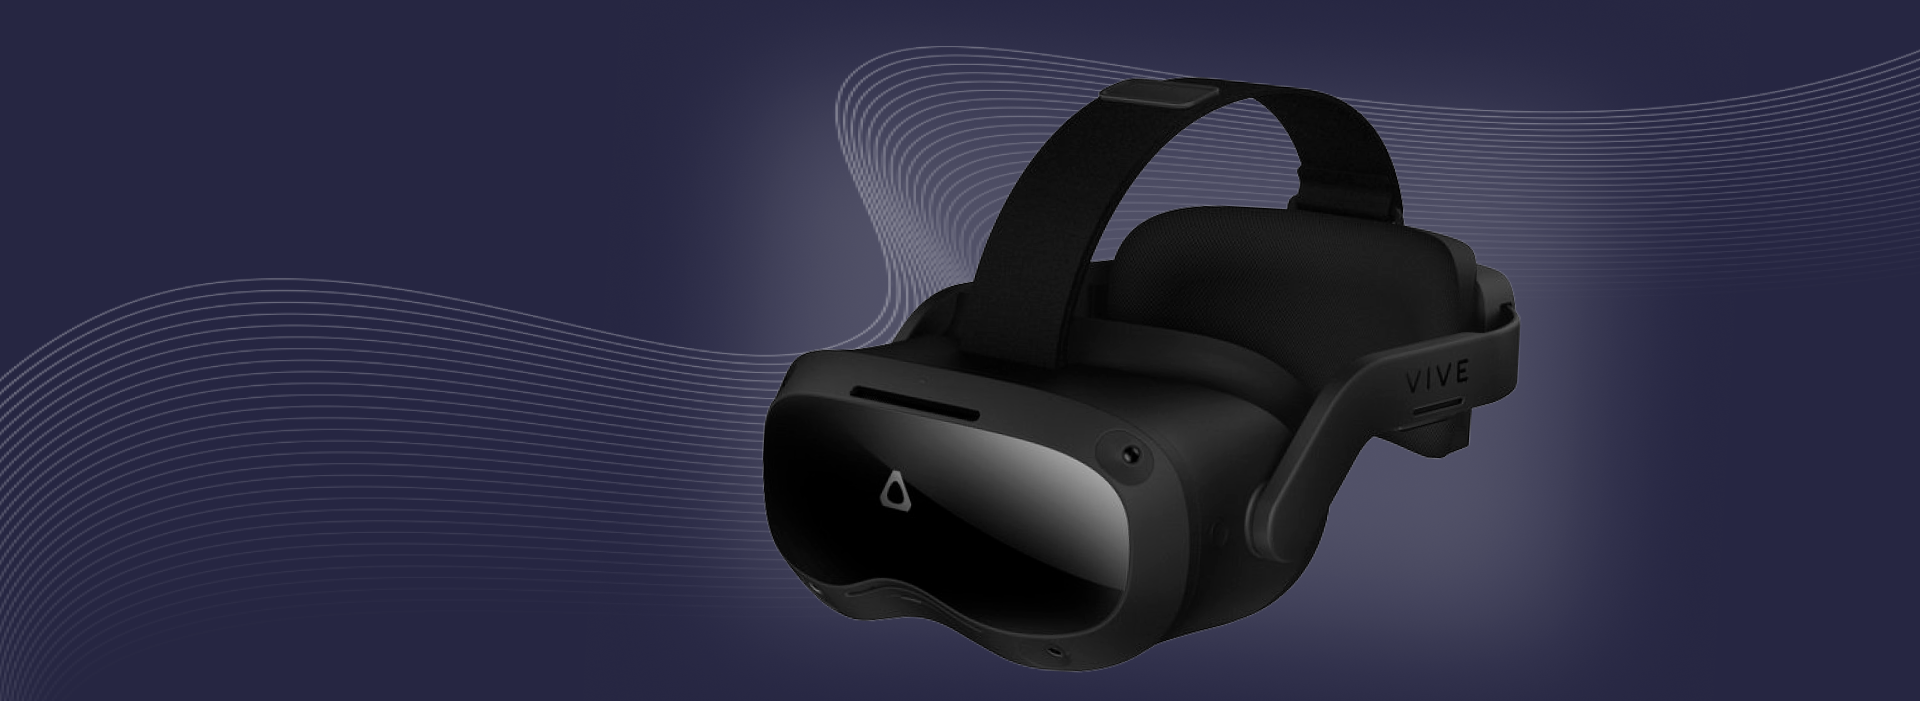 Обзор VR-шлема Vive Focus 3 | Разработка приложений VR и AR в Helmeton